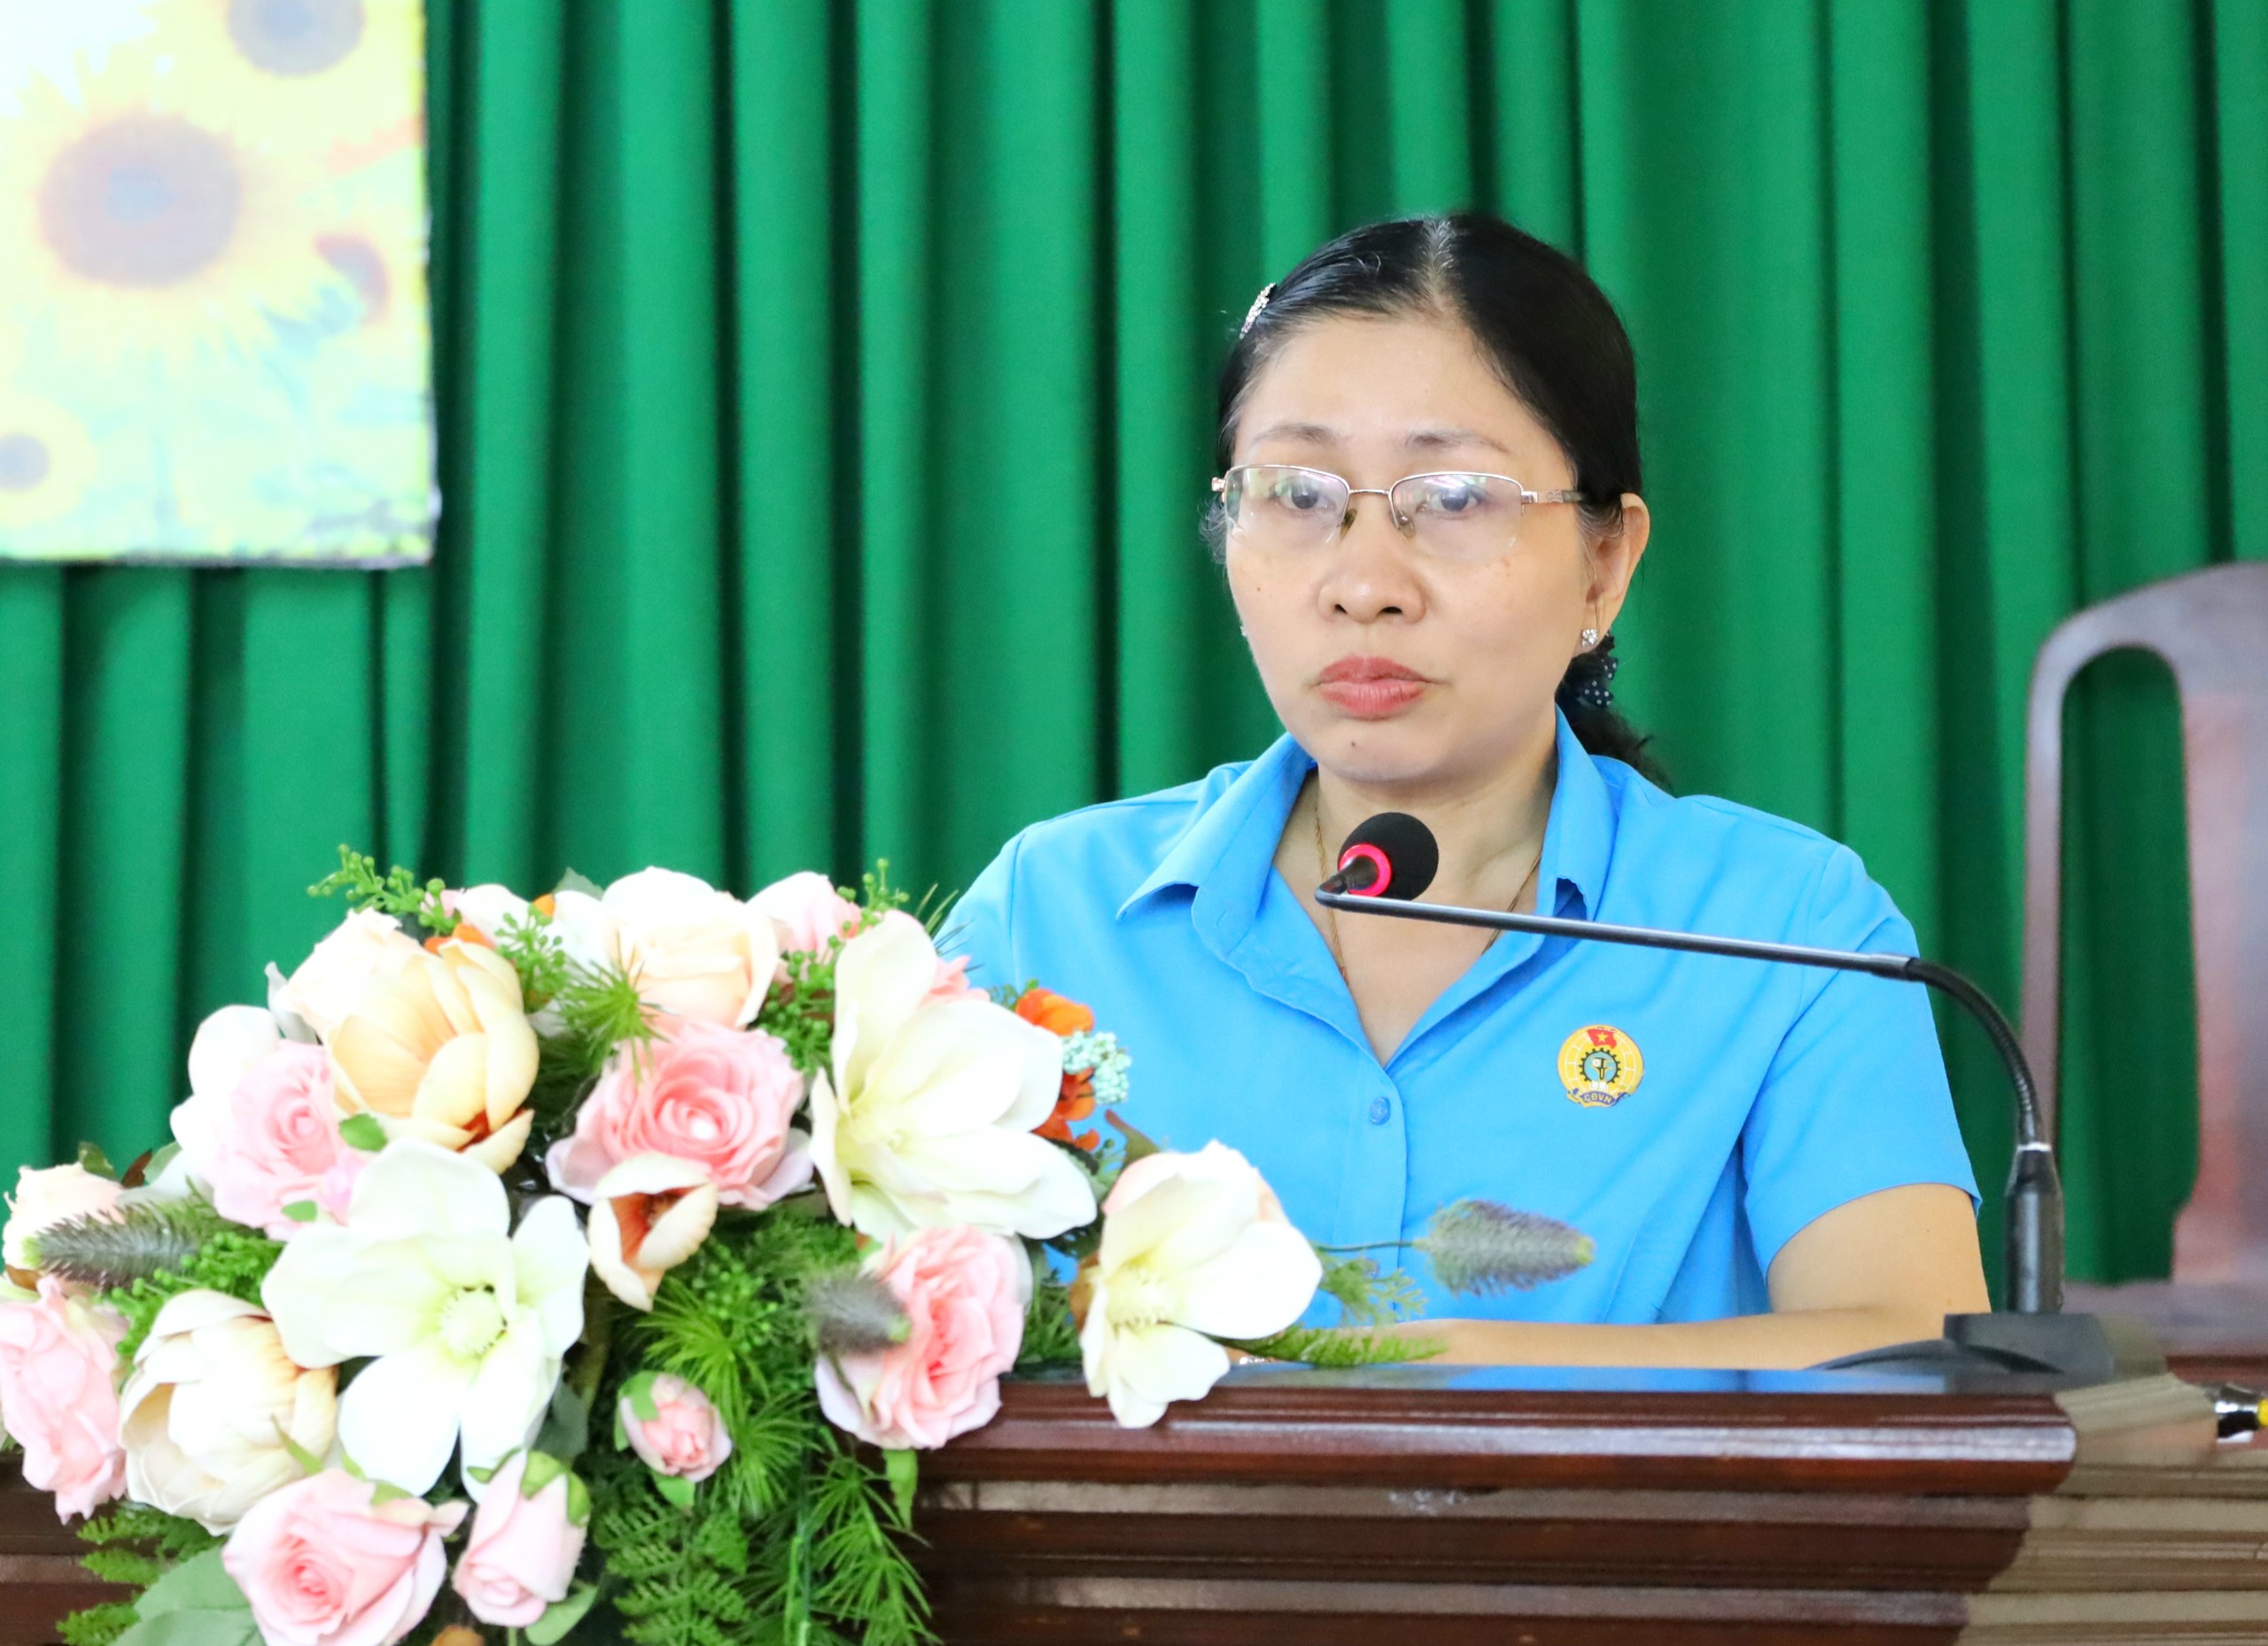 Bà Lý Hồng Ngọc - Chủ tịch Công đoàn Ngành Giáo dục và Đào tạo TP. Cần Thơ phát biểu tại buổi họp mặt.